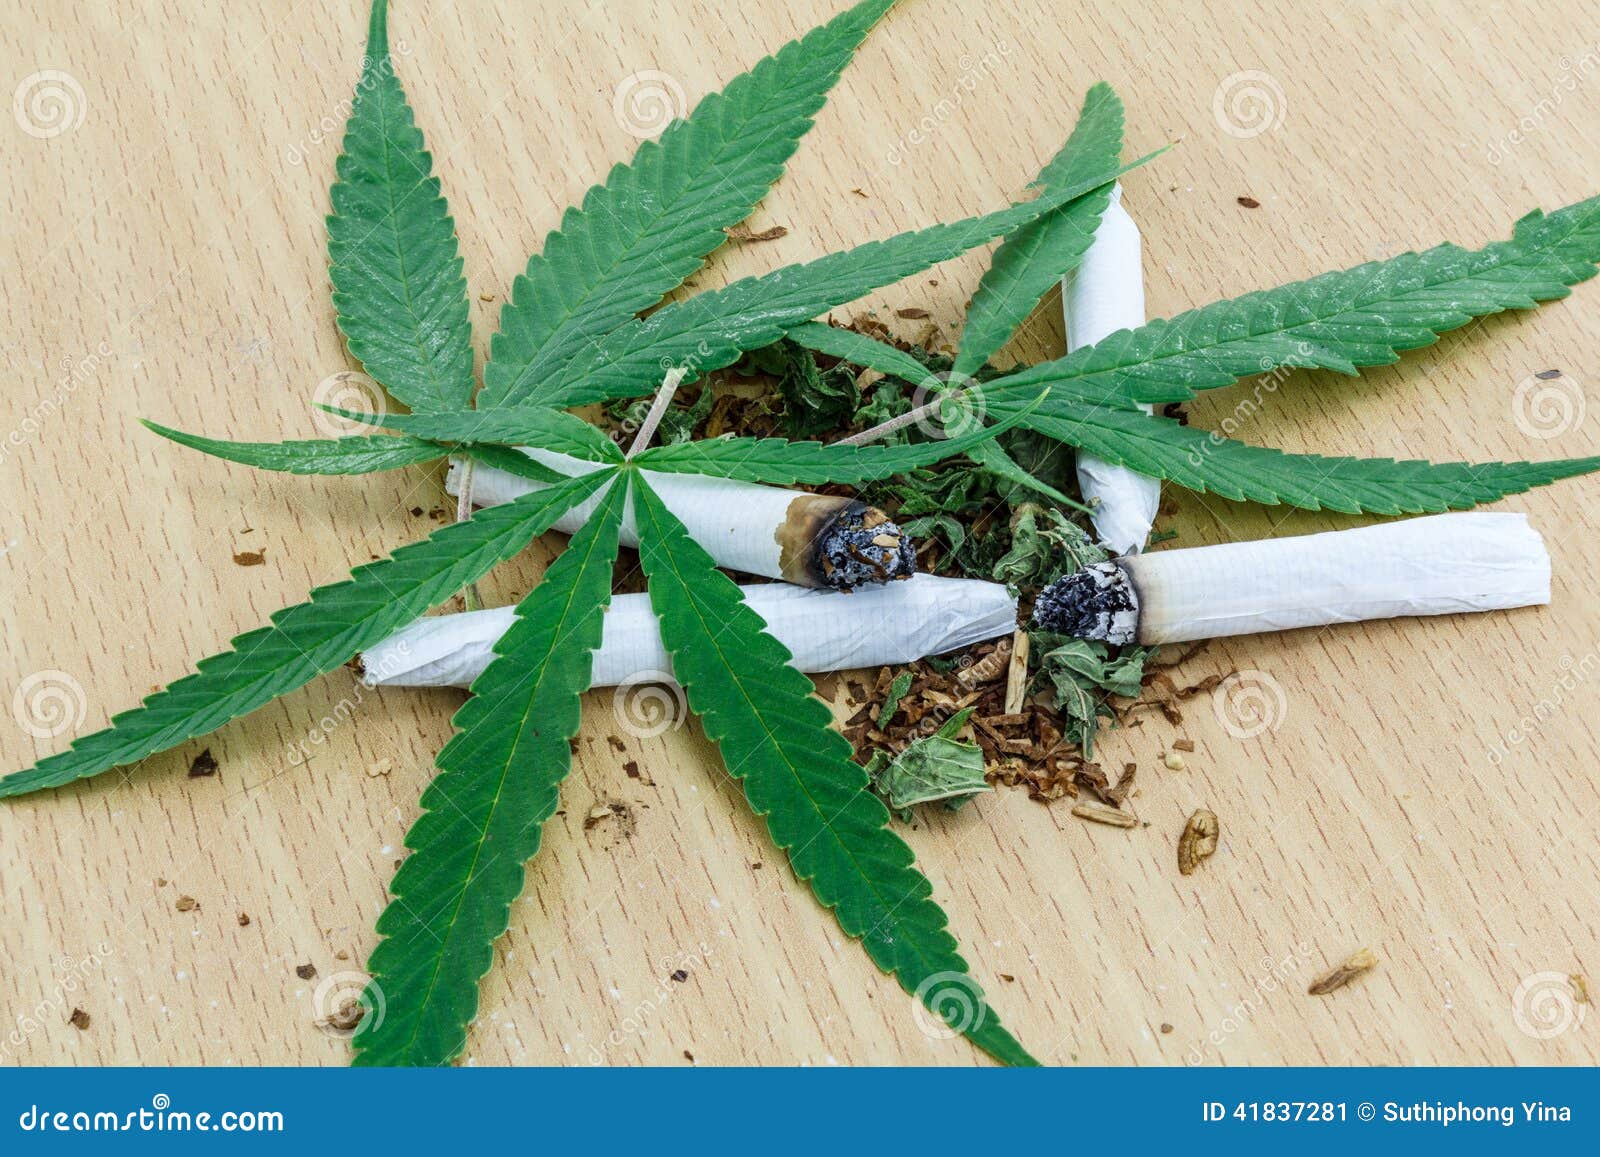 План из конопли картинки симулятор по выращивание марихуаны